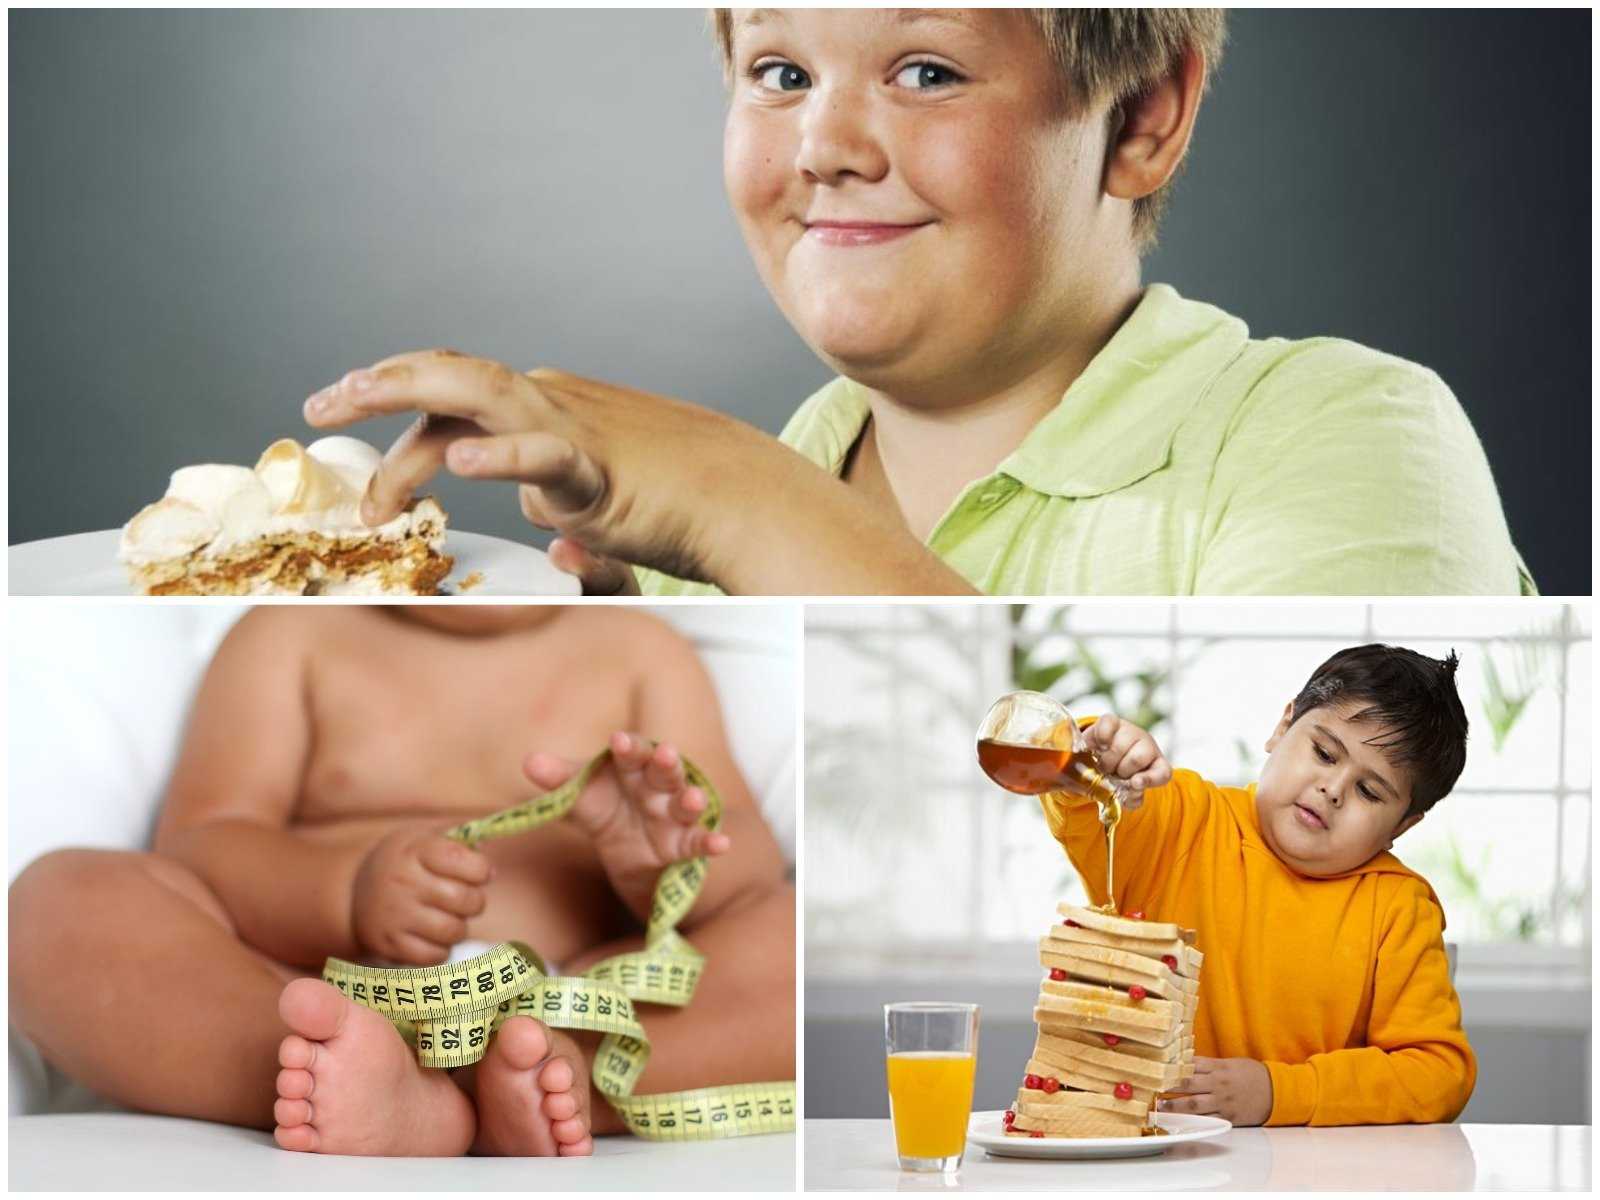 Принципы питания для снижения веса - основные, правильное питание